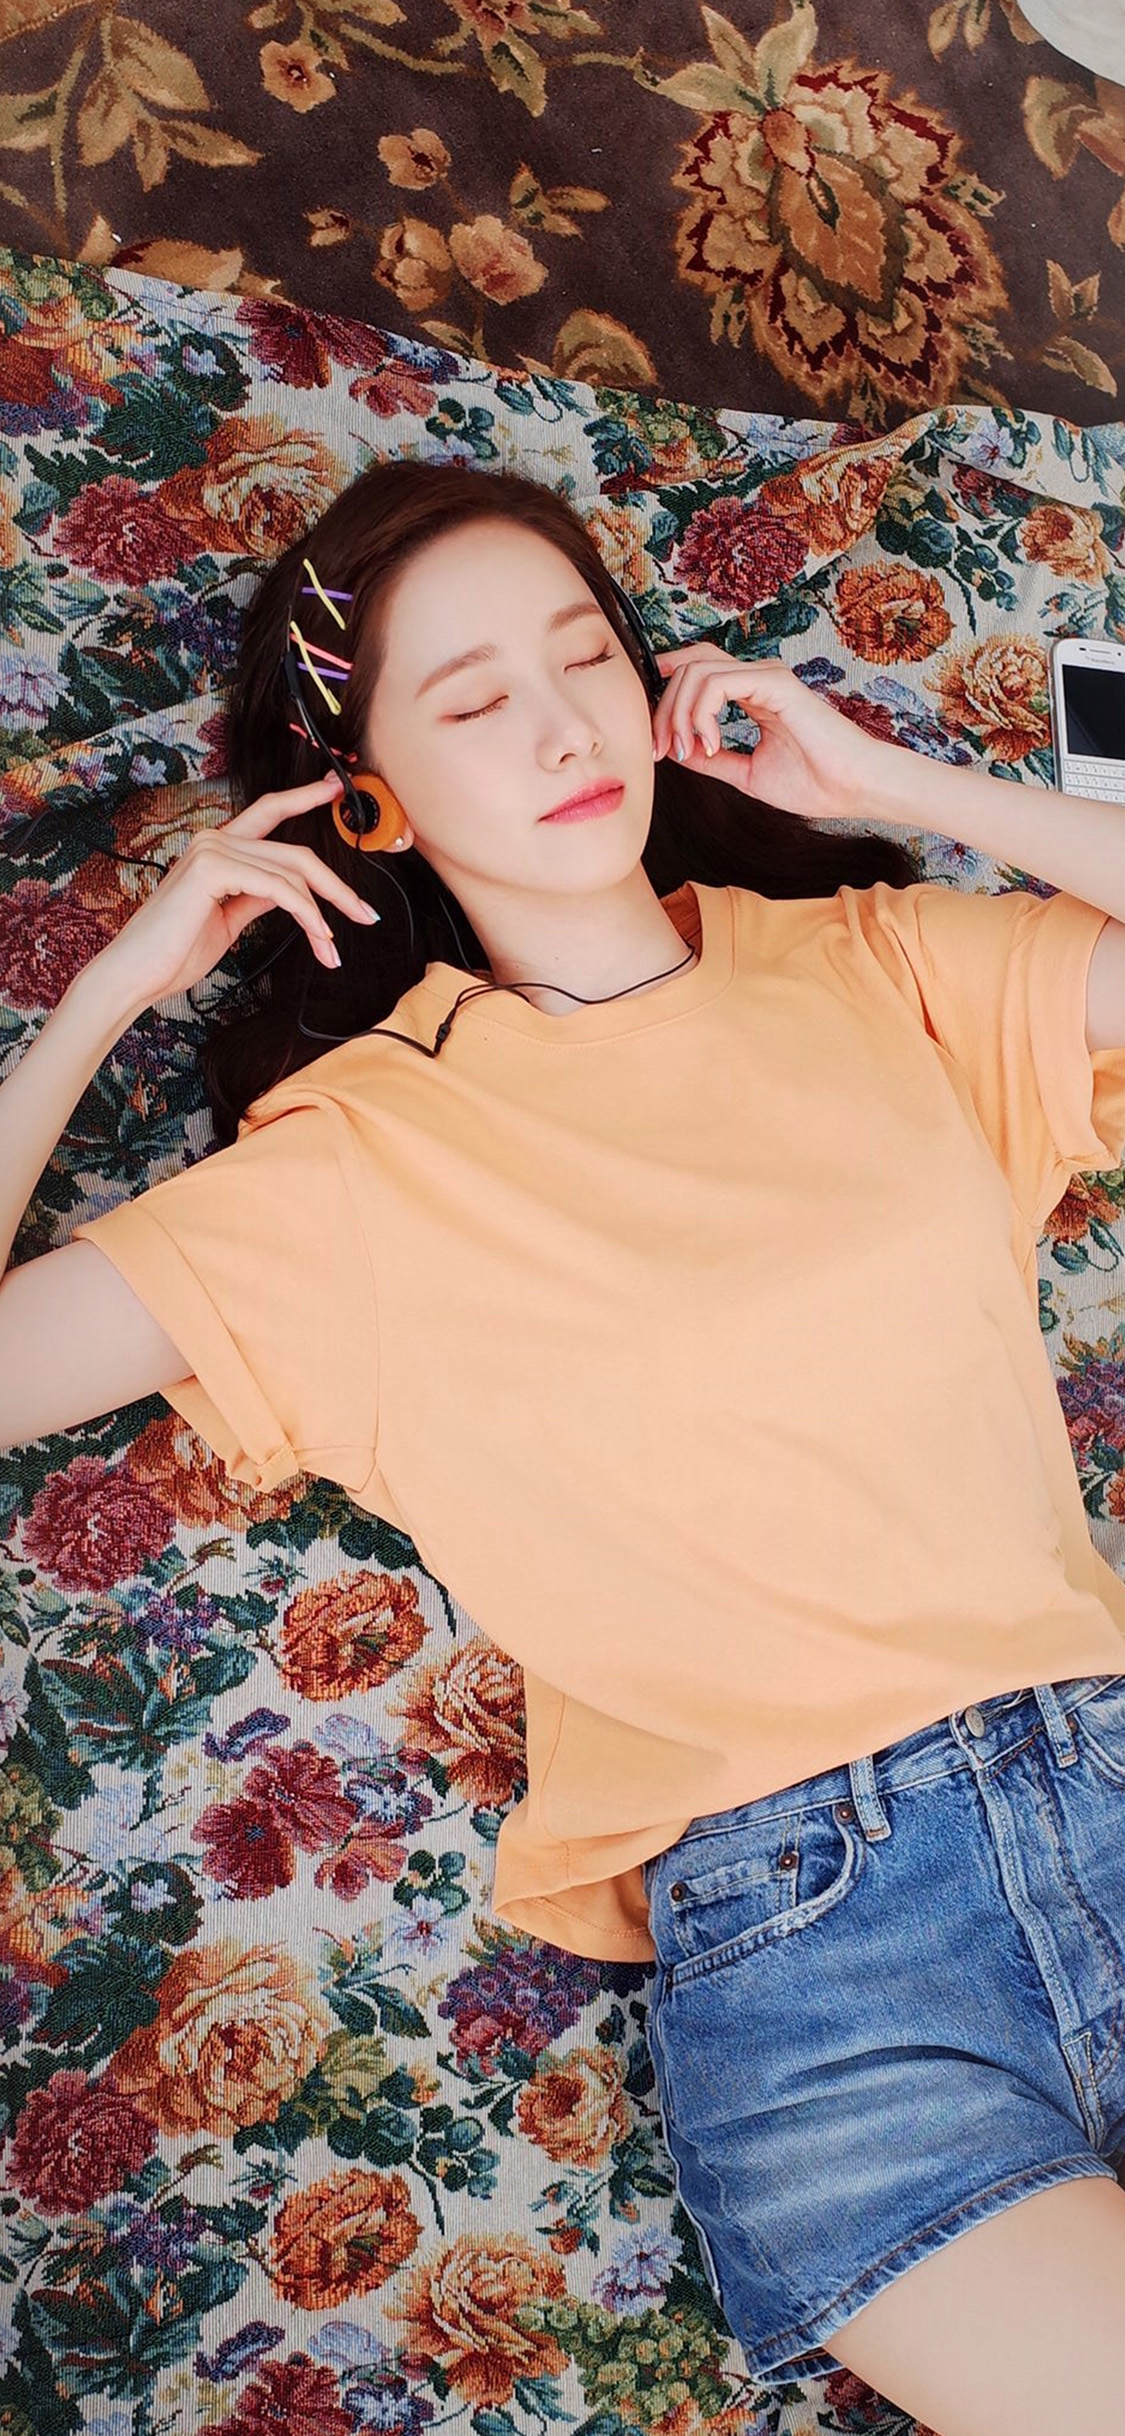 躺在绣花地毯上听歌韩国美女明星允儿手机壁纸